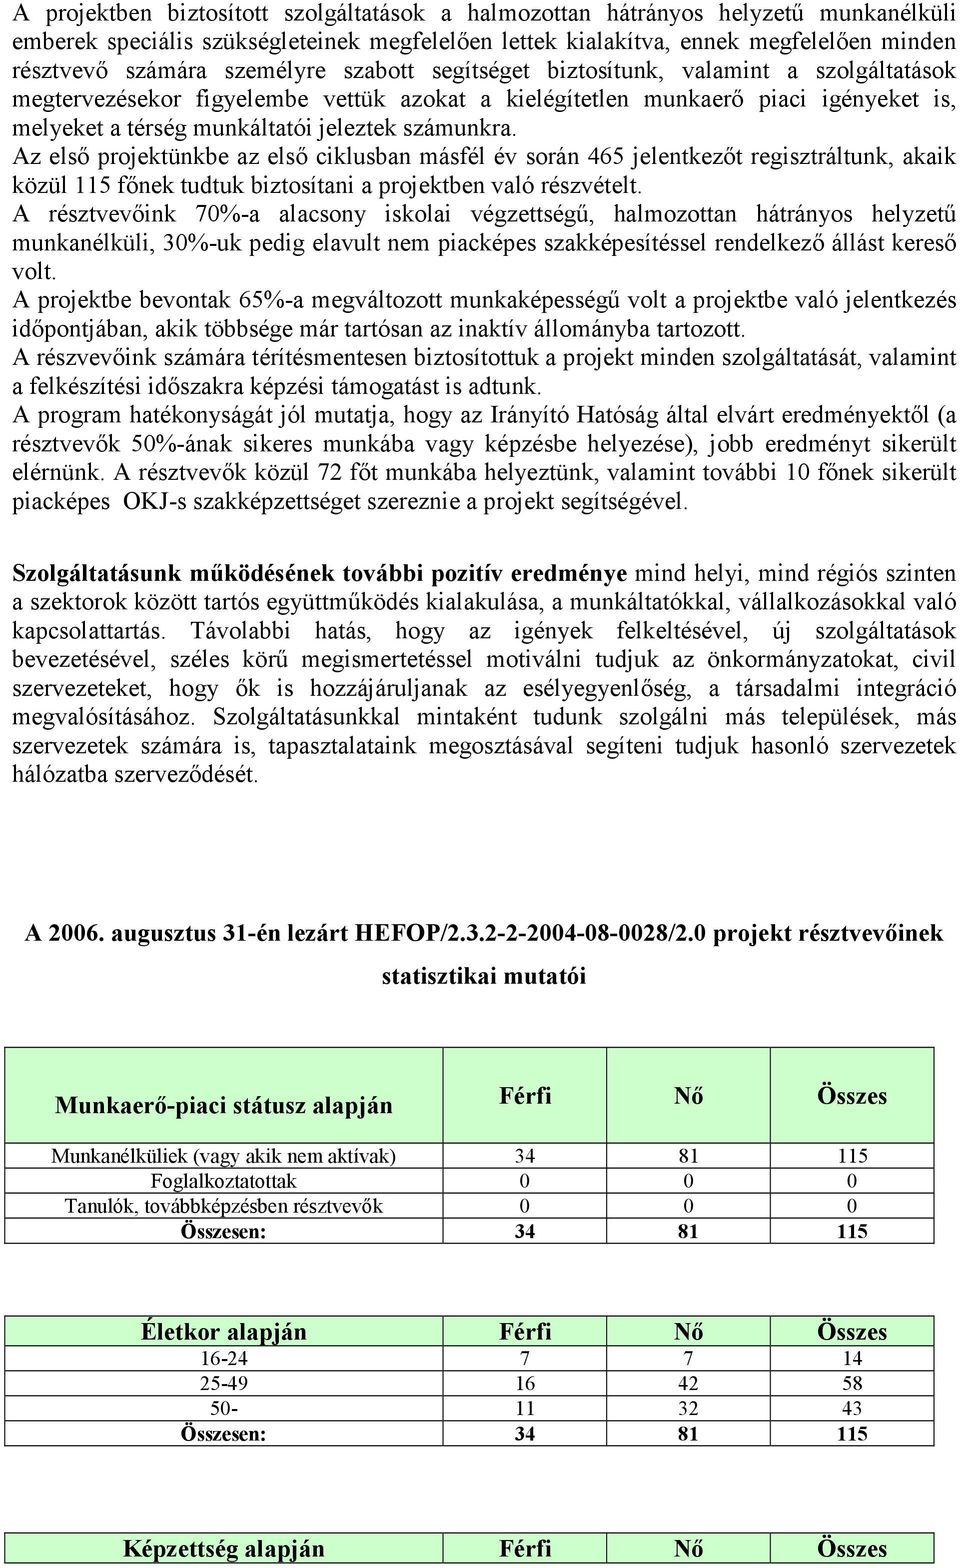 számunkra. Az elsı projektünkbe az elsı ciklusban másfél év során 465 jelentkezıt regisztráltunk, akaik közül 115 fınek tudtuk biztosítani a projektben való részvételt.